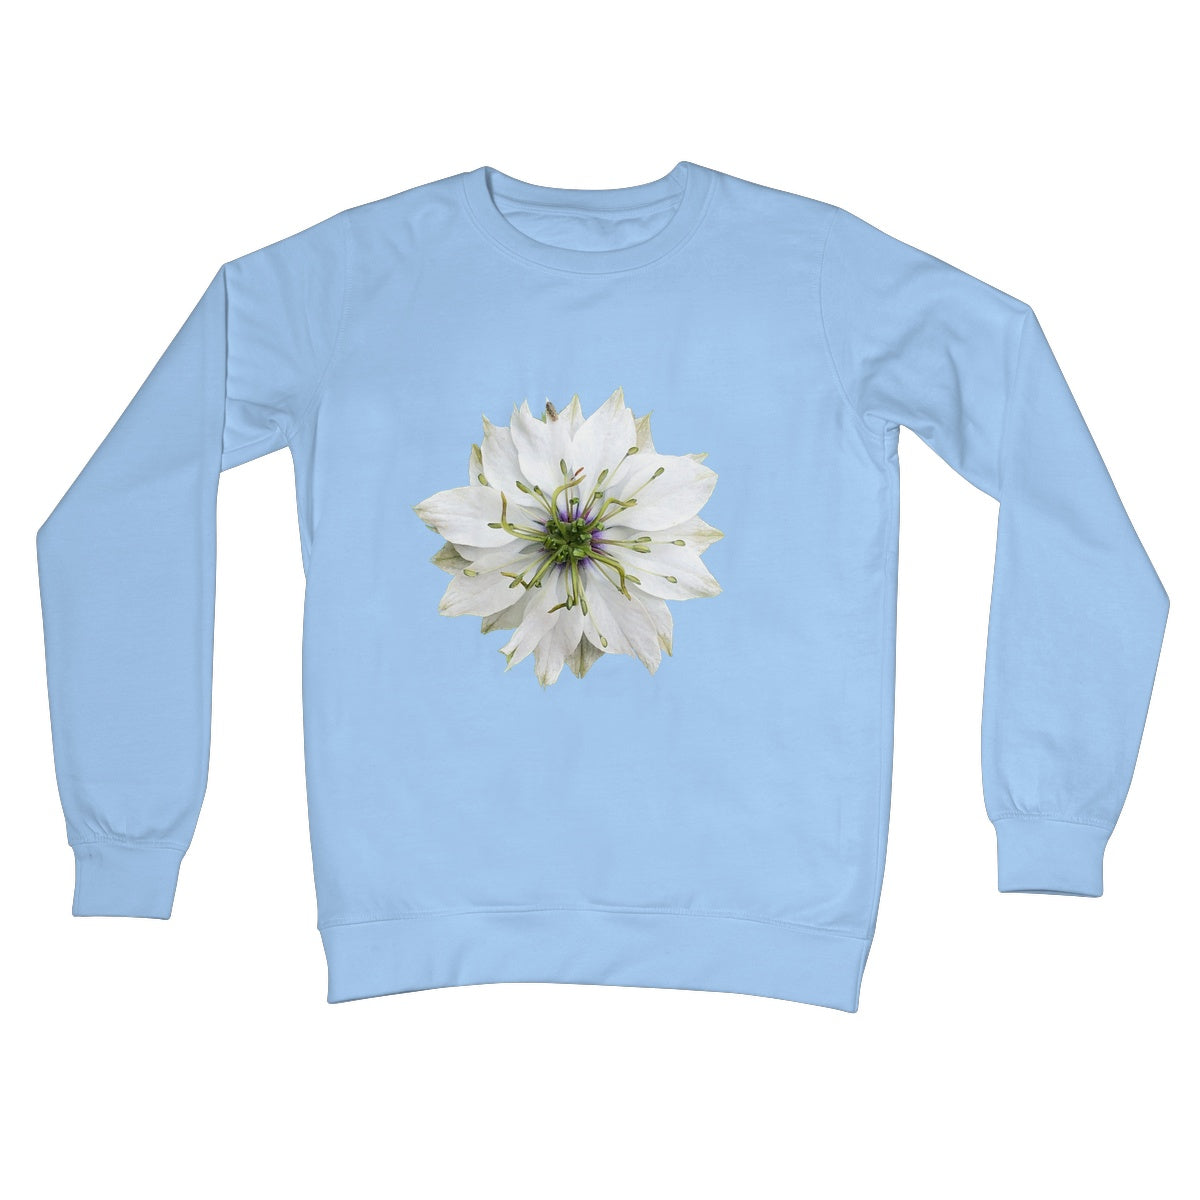 Love in the Mist Crew Neck Sweatshirt - Nature of Flowers